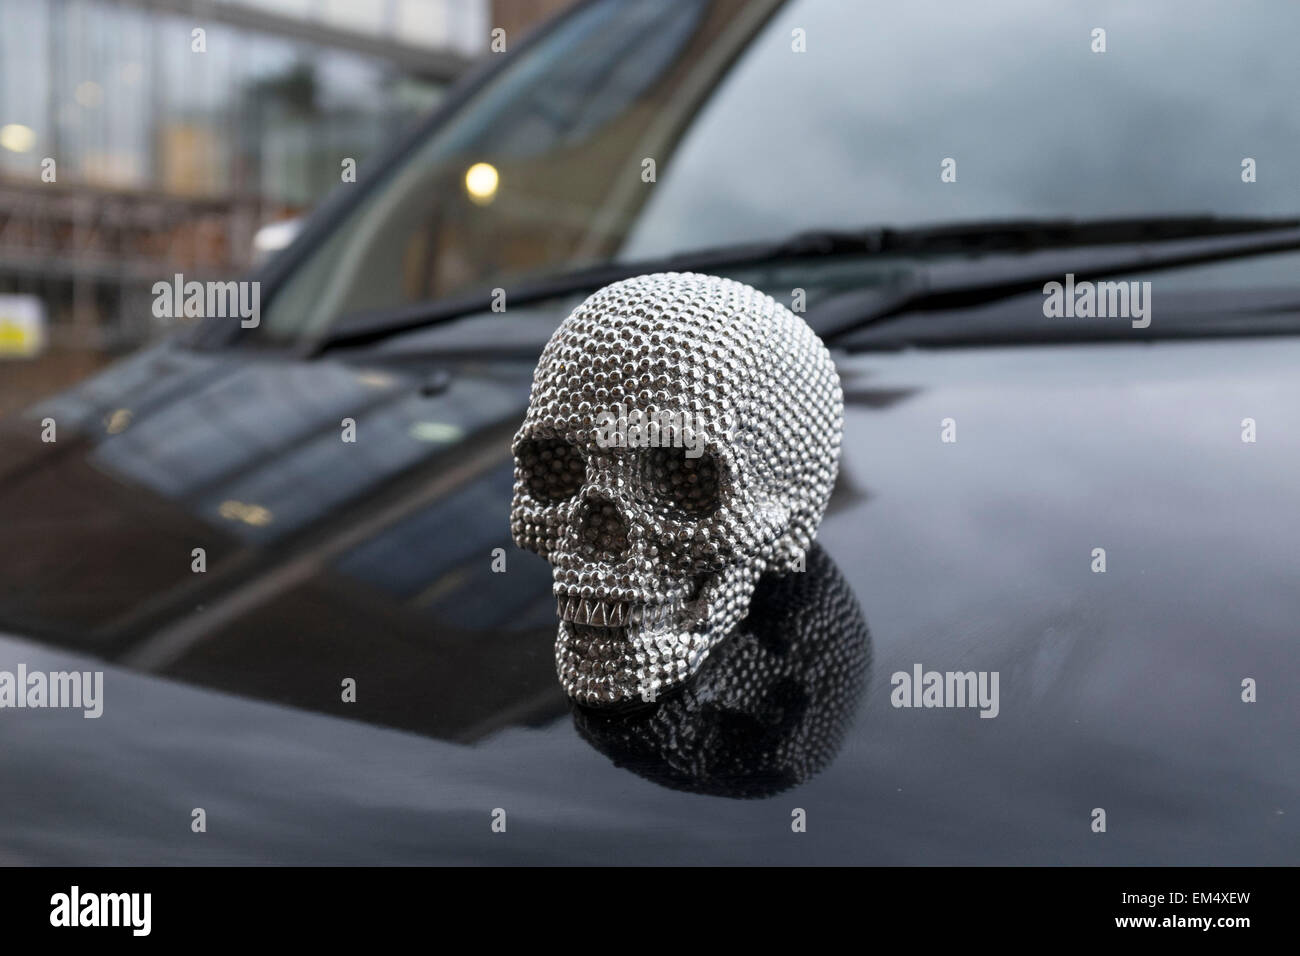 Insignia Capot cráneo metálico sobre el capó de un taxi. Esta pequeña  cabeza humana es del estilo de la calavera de diamantes de Damien Hirst, un  mundo renombradas obras de arte. Londres,